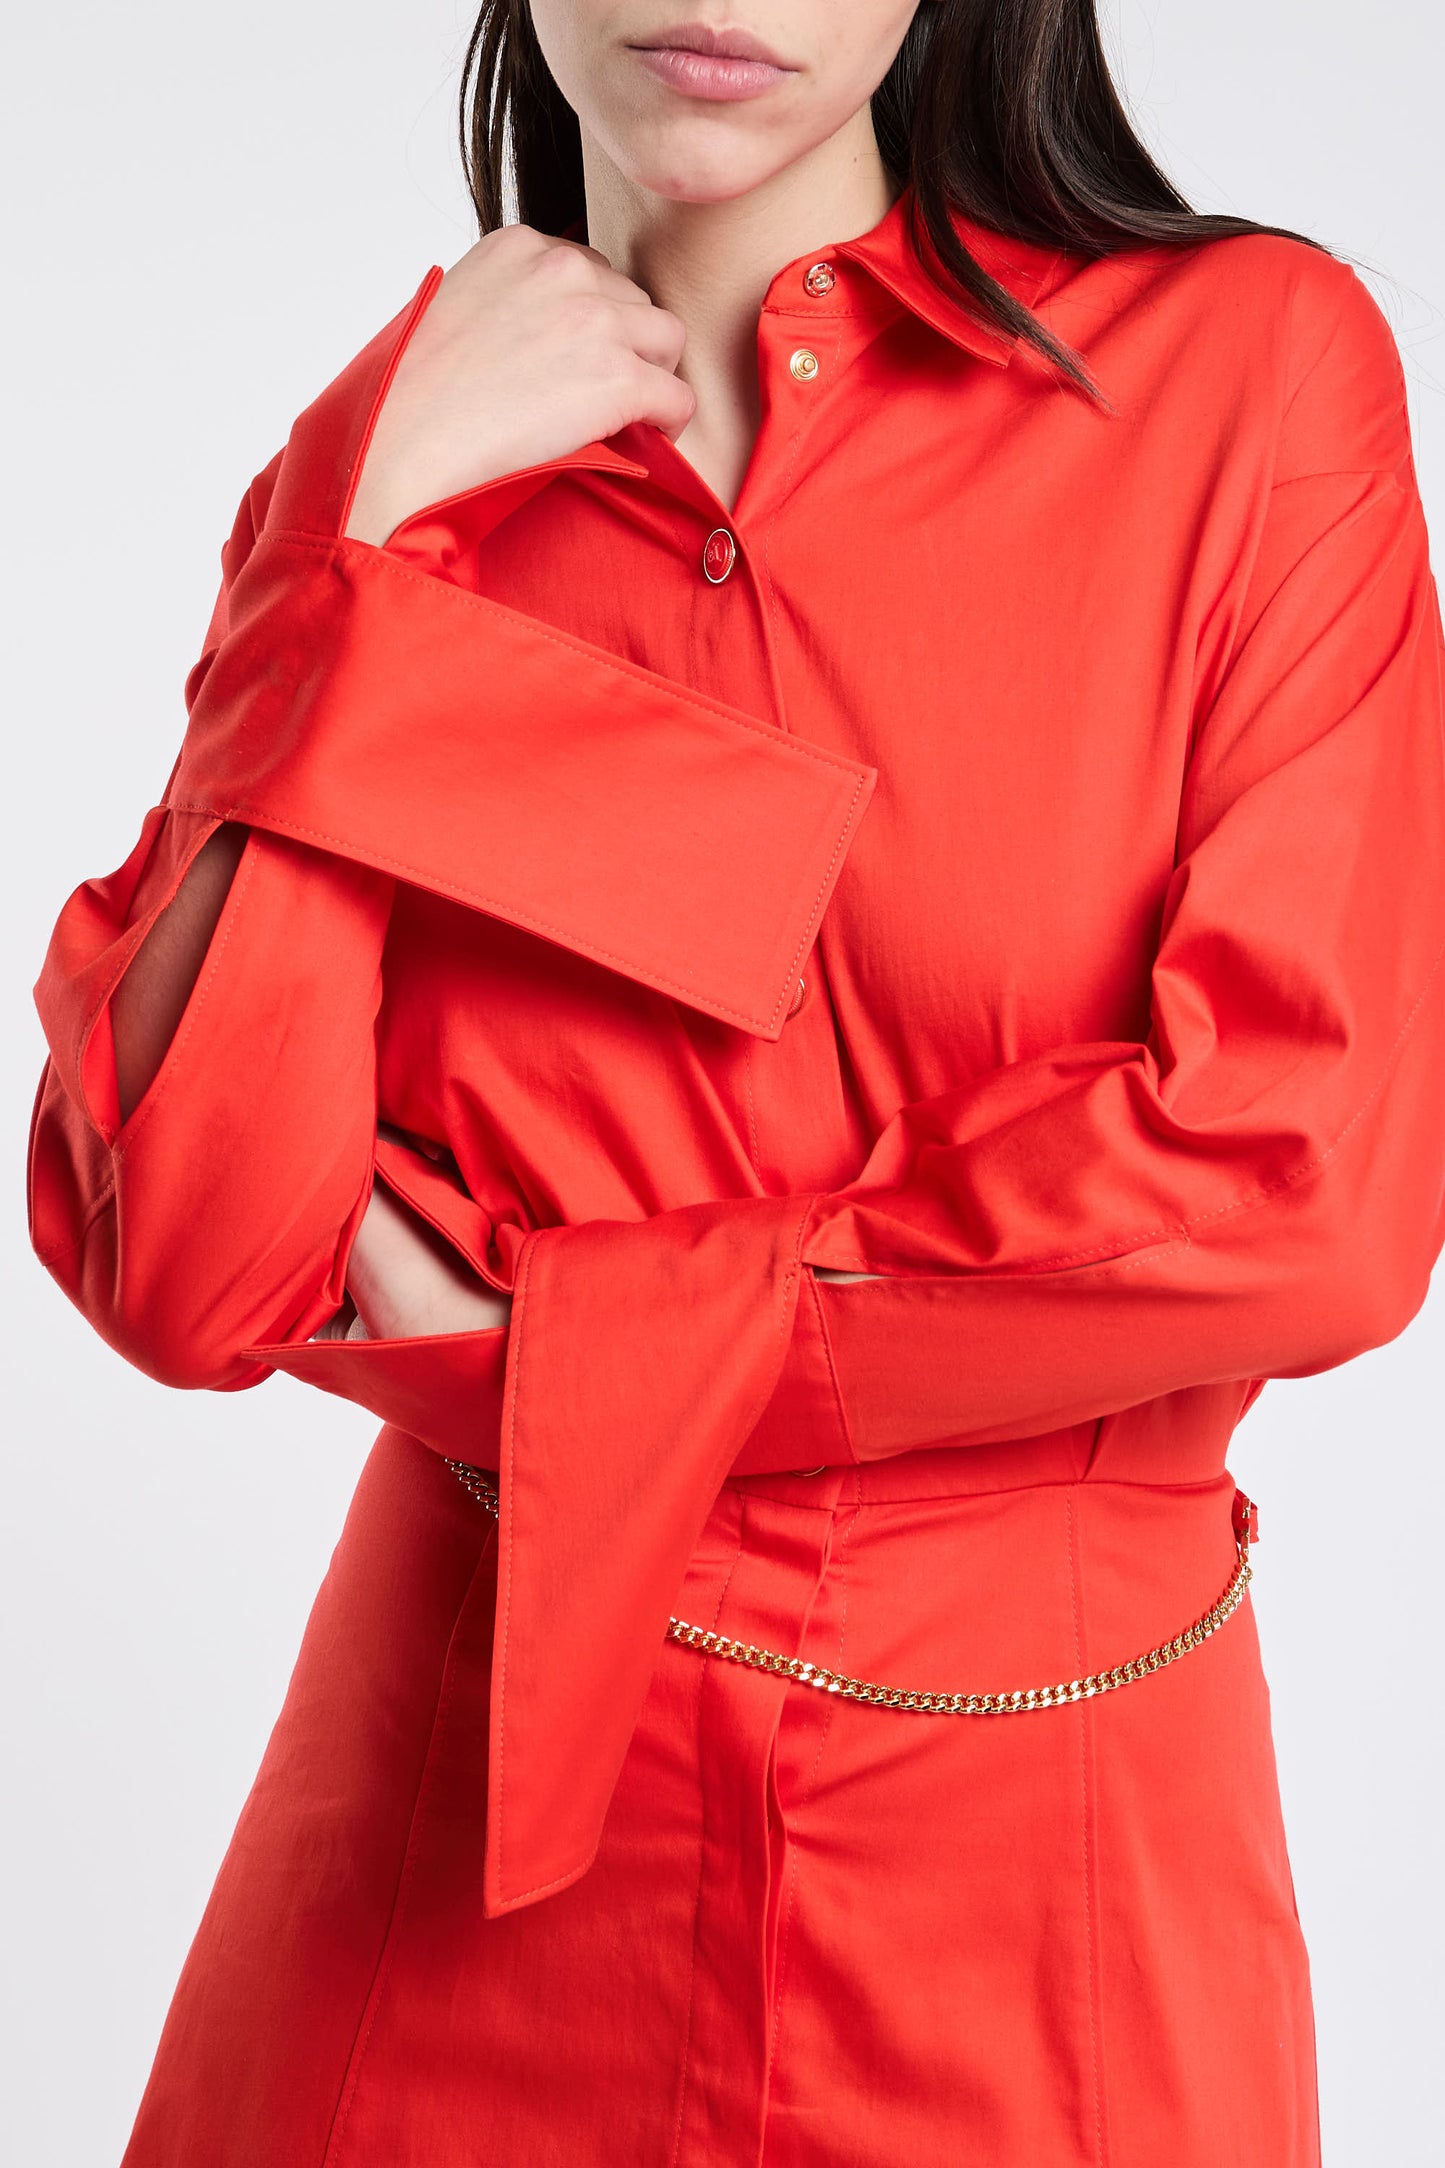  Elisabetta Franchi Red Dress In Cotton/elastane Rosso Donna - 8